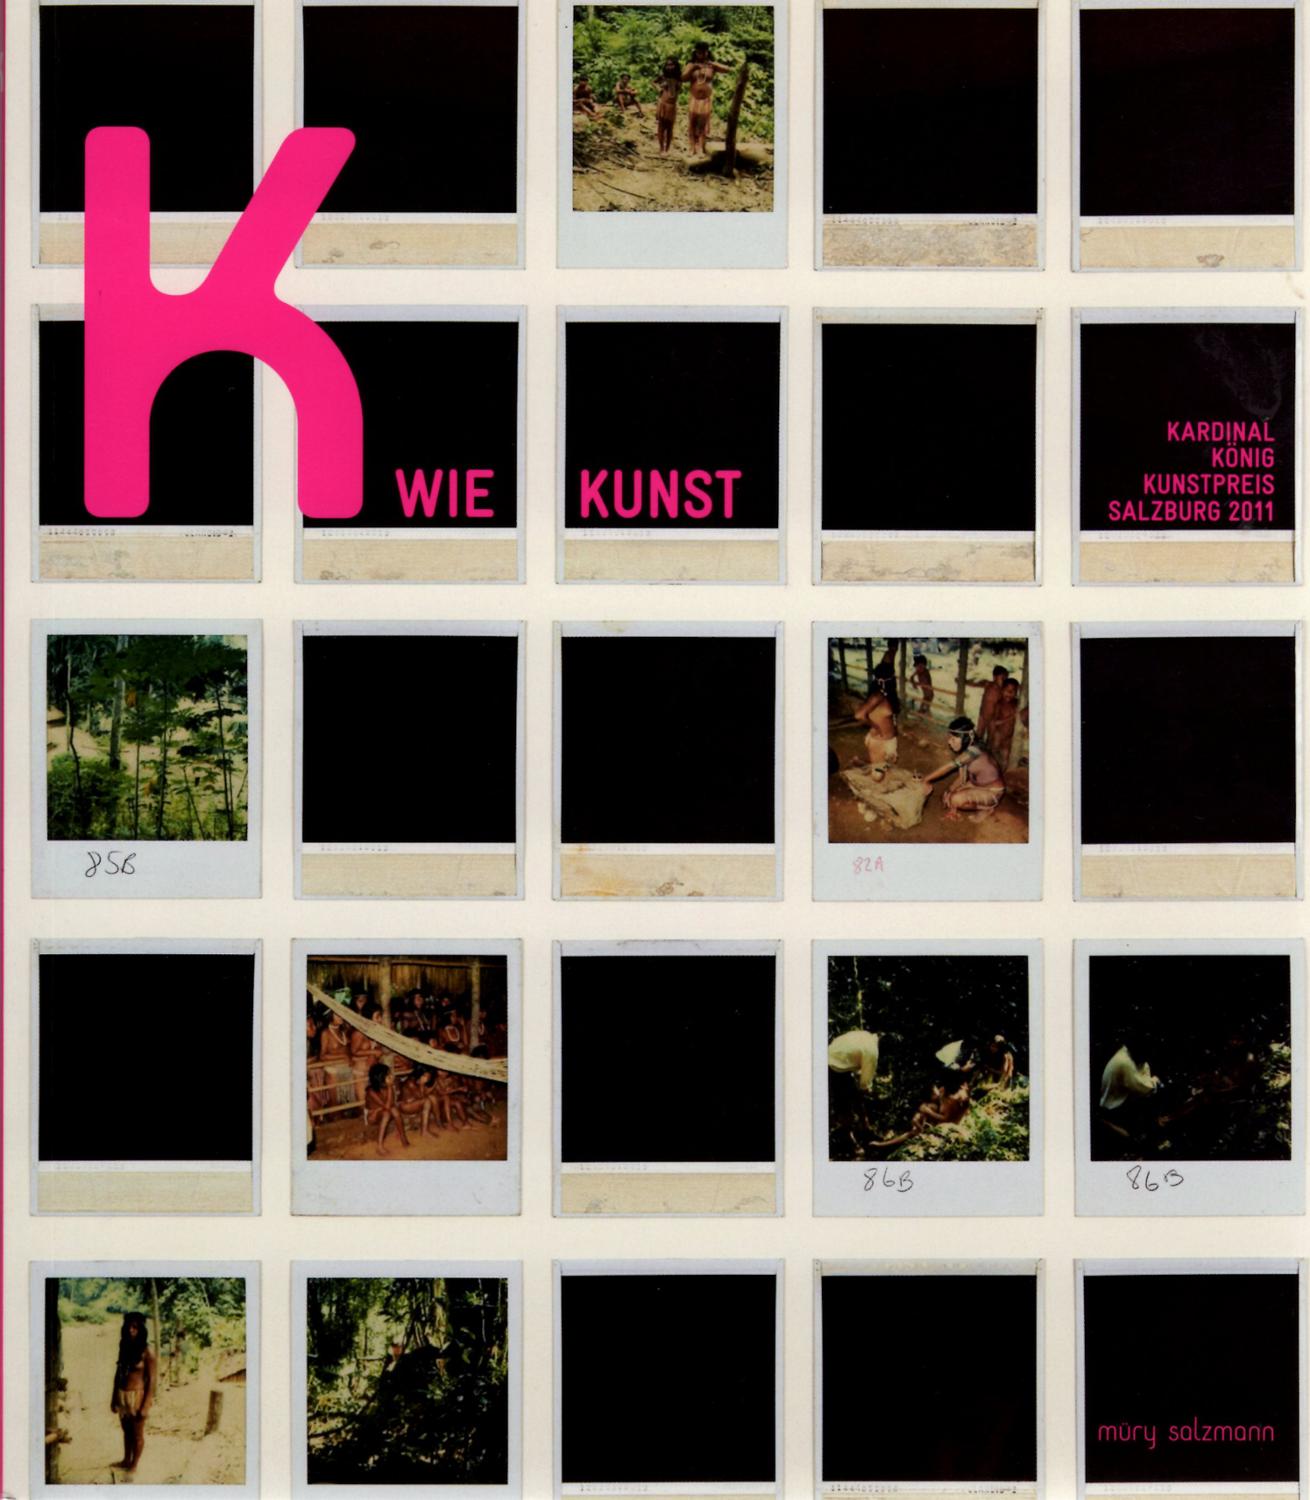 Katalog Kardinal Koenig Kunstpreis.